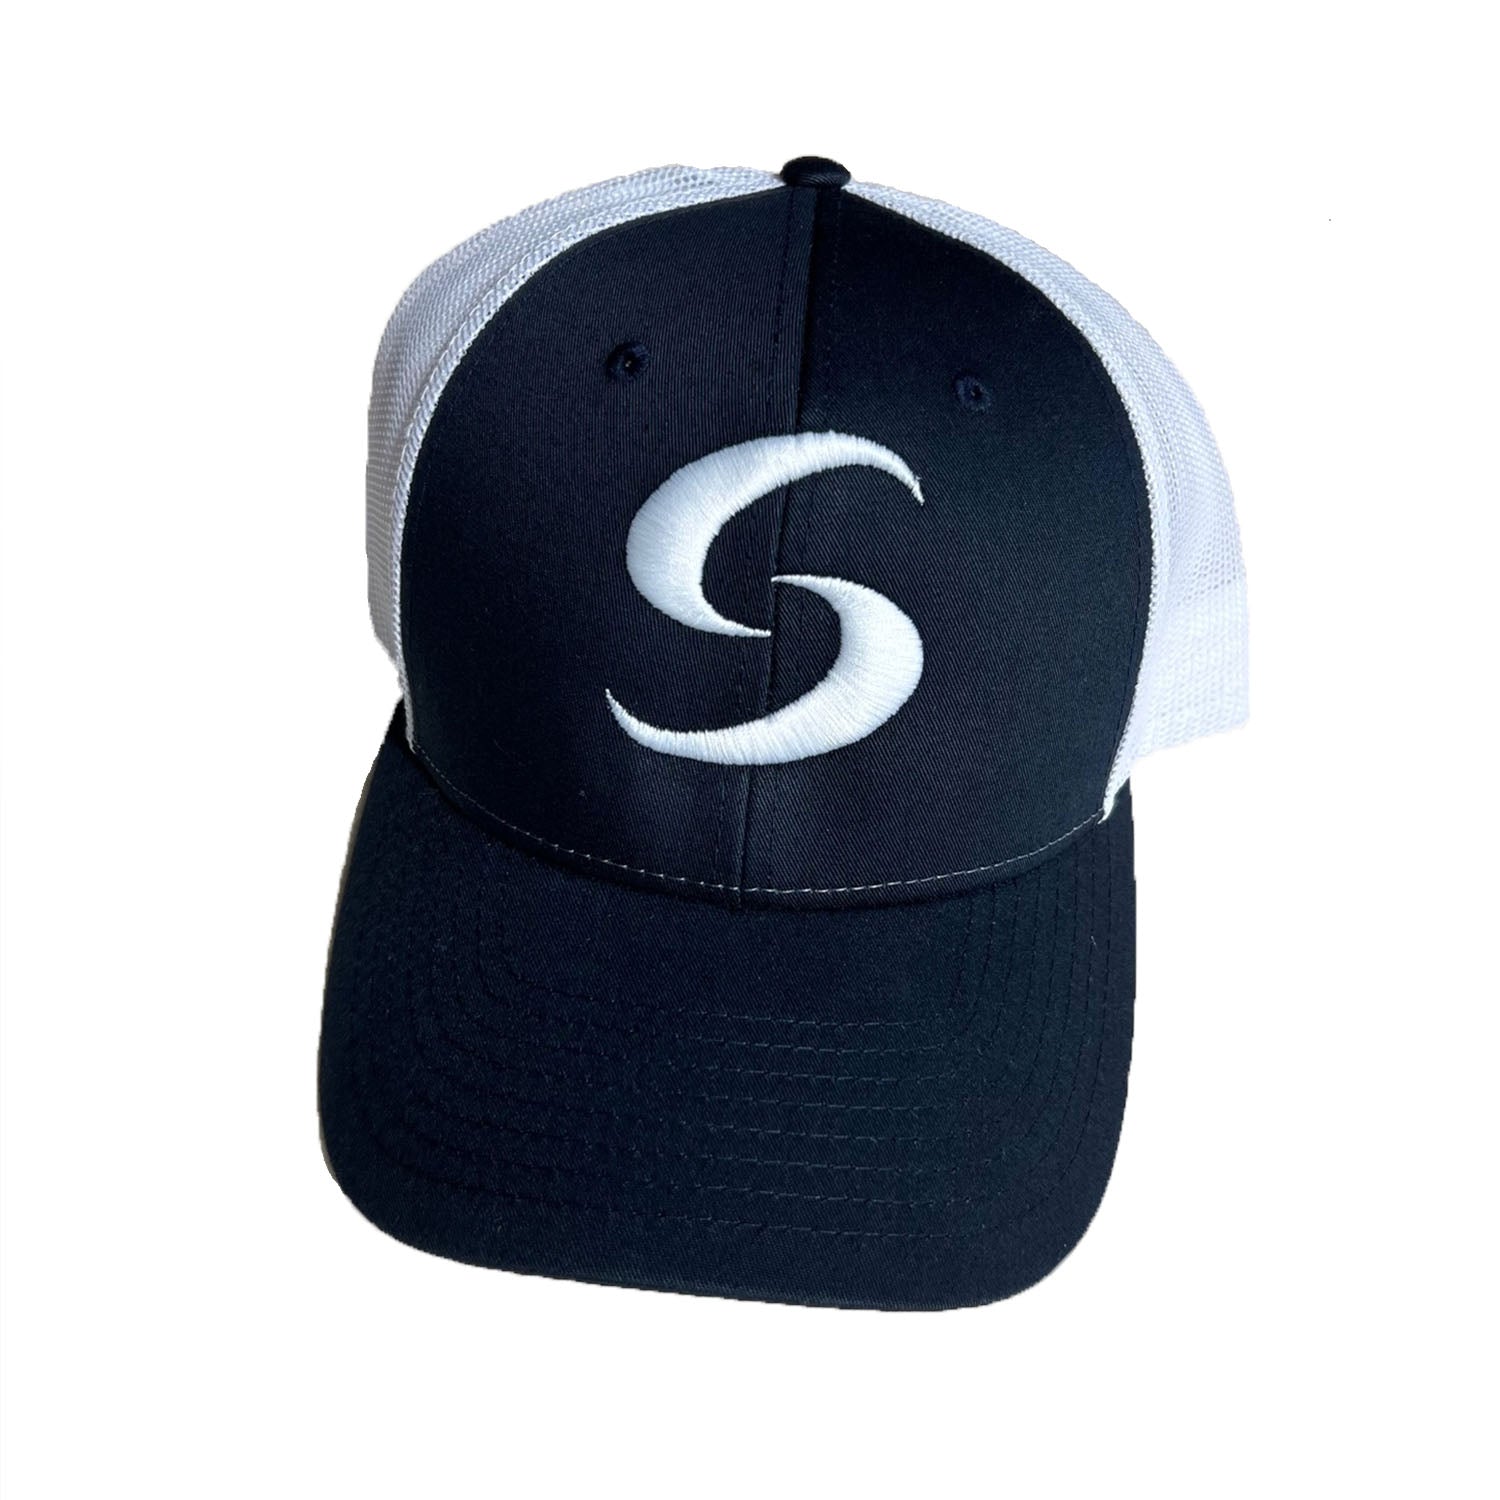 STRENFLEX "S" HAT